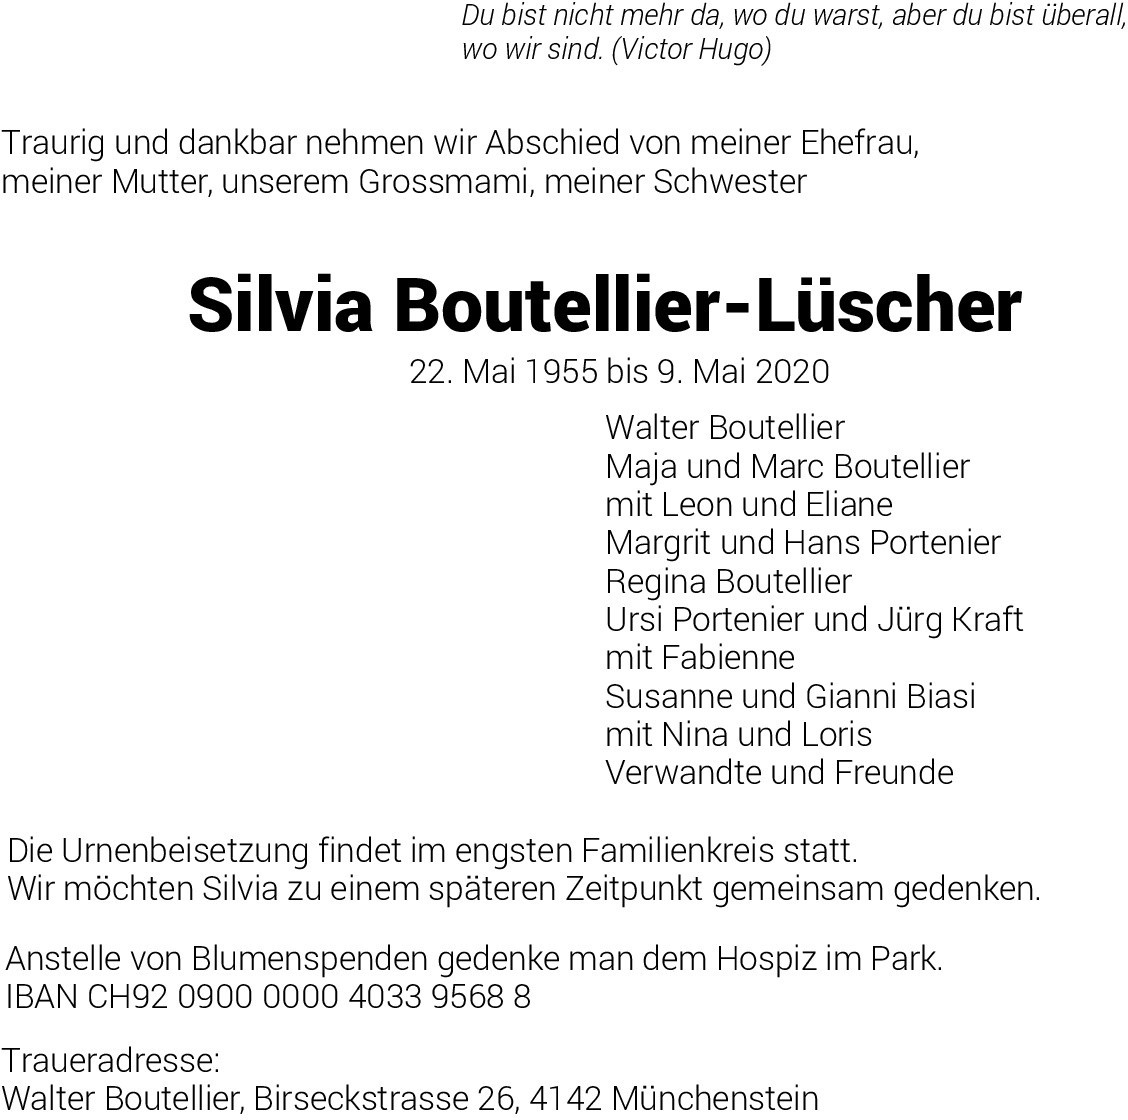 Silvia Boutellier-Lüscher